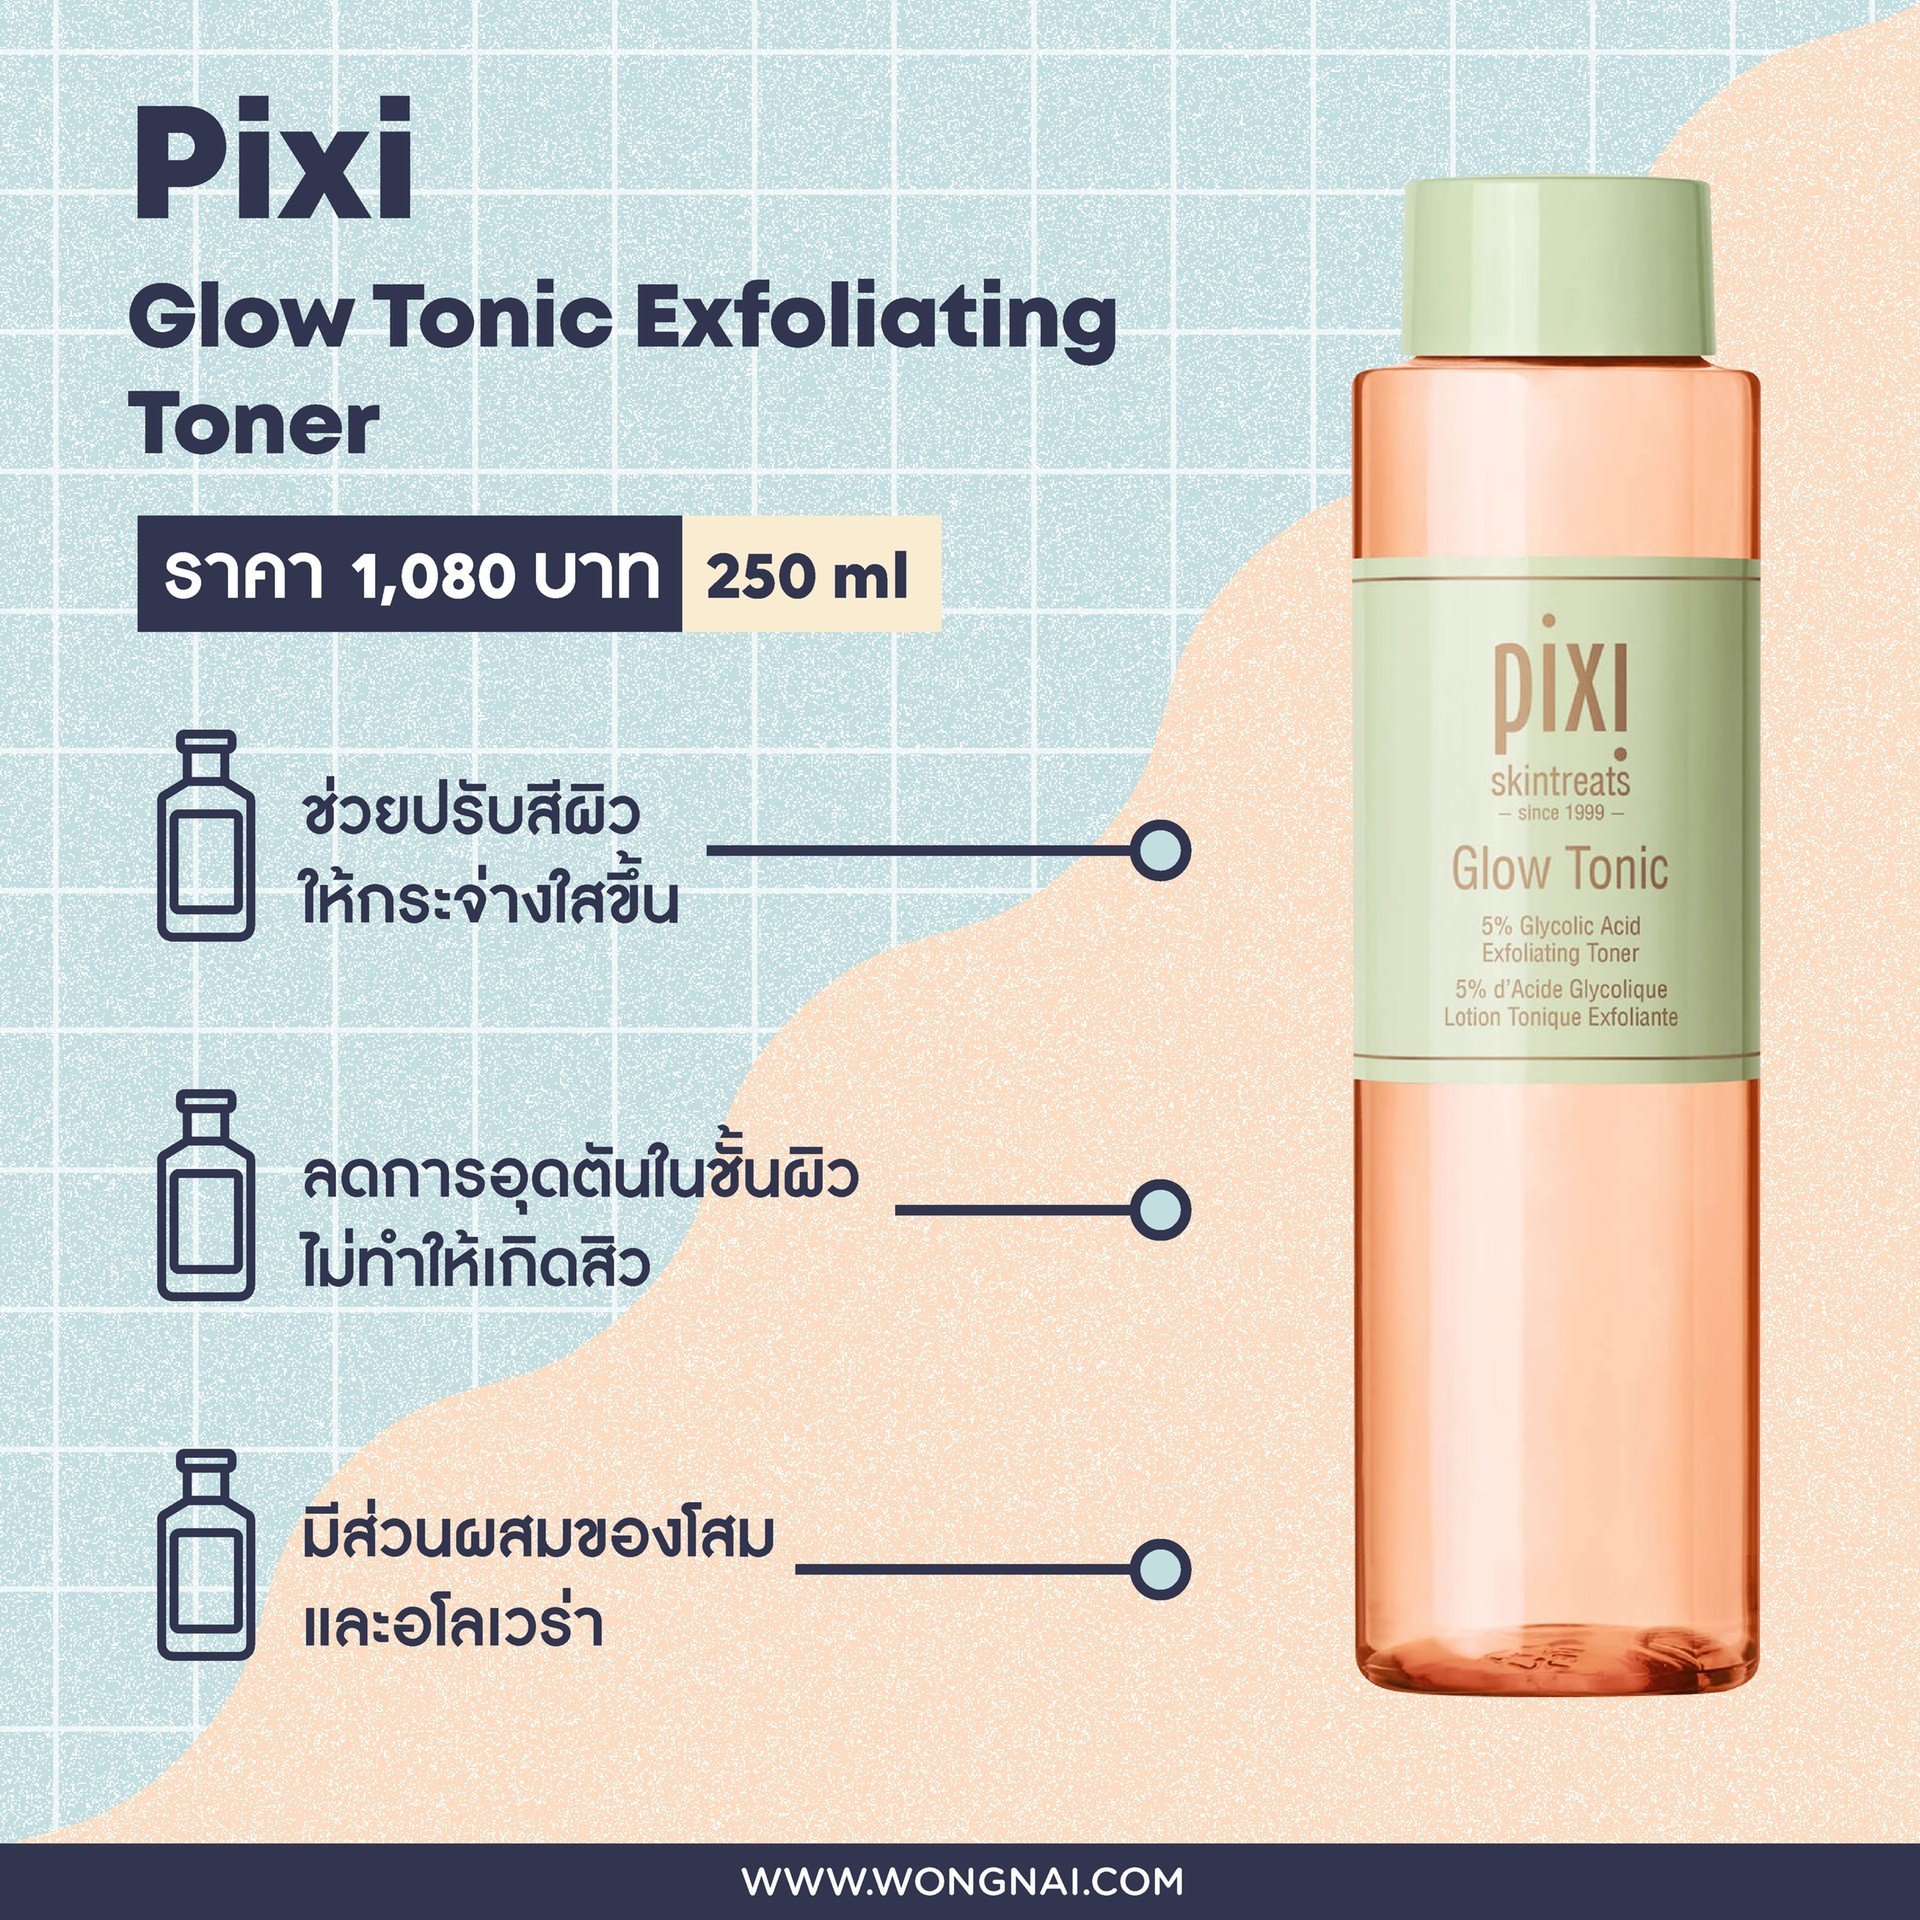 โทนเนอร์ Pixi Glow Tonic Exfoliating Toner